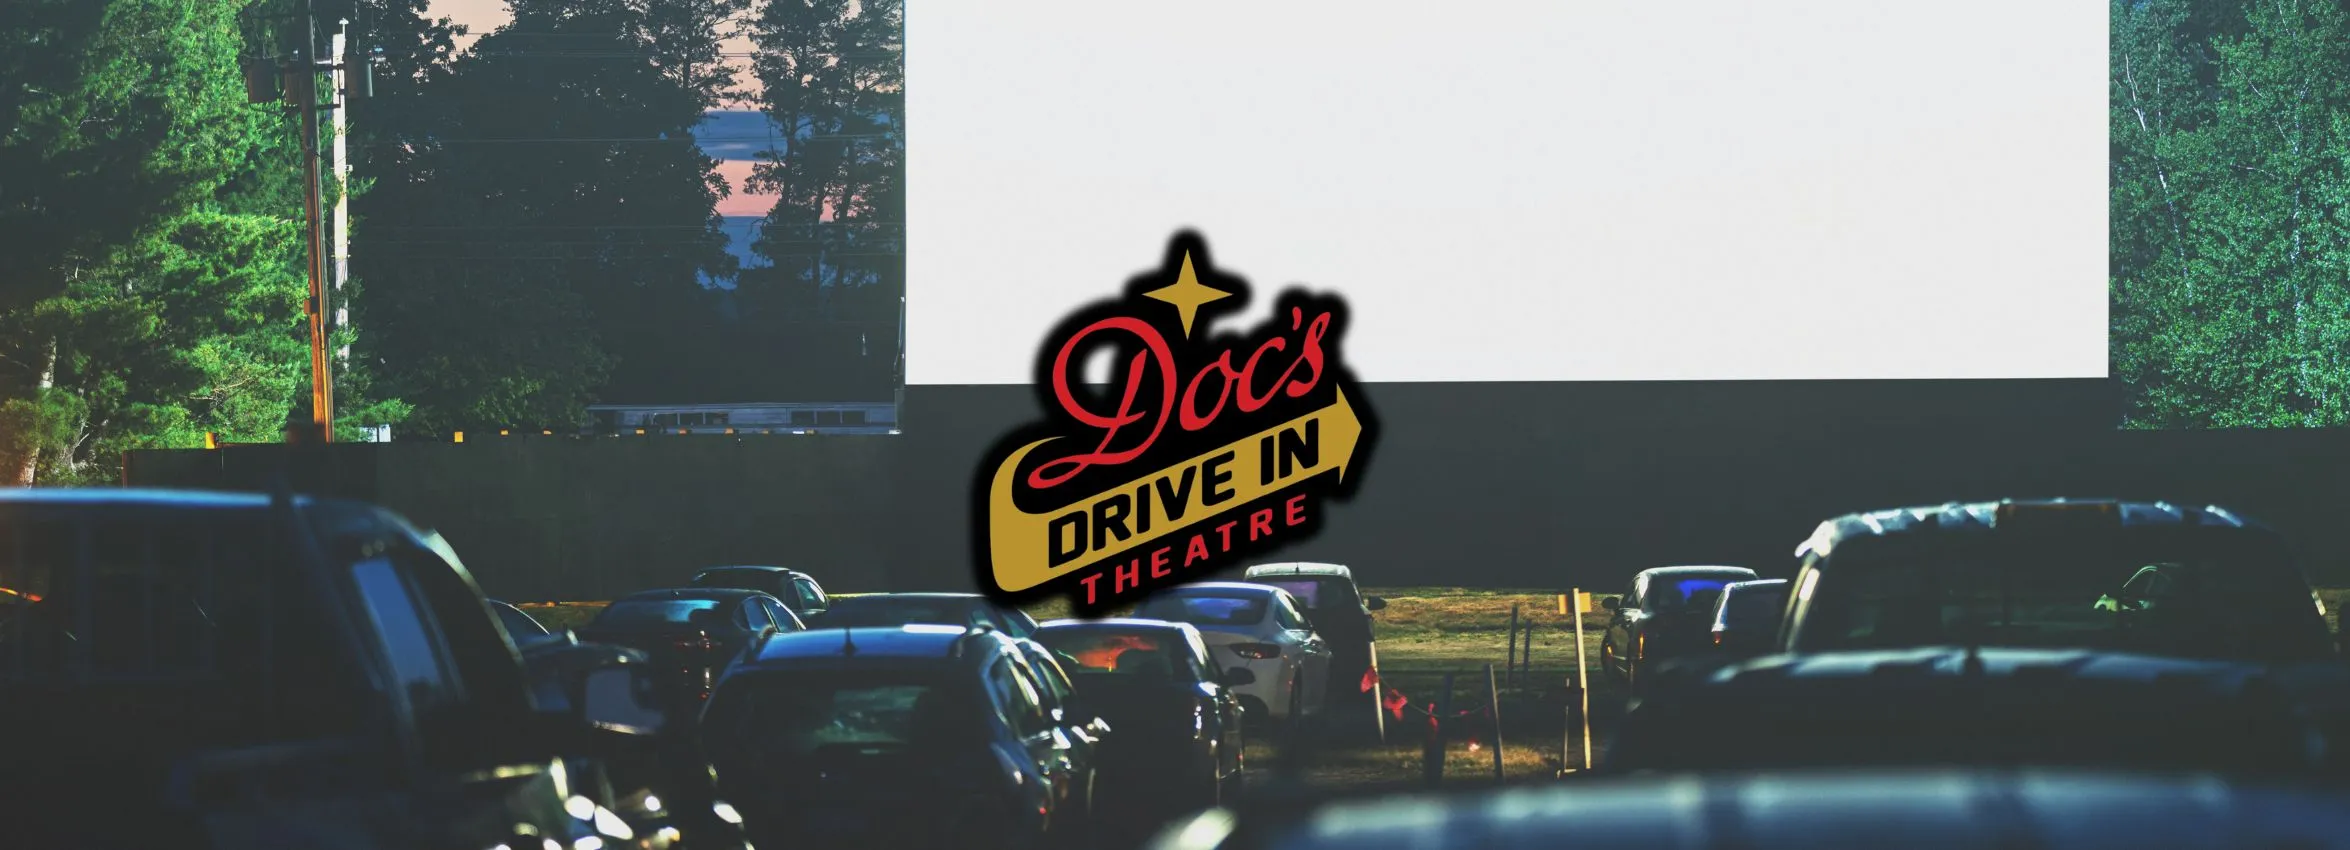 Docs-Drive-In-Theatre_Desktop_ET